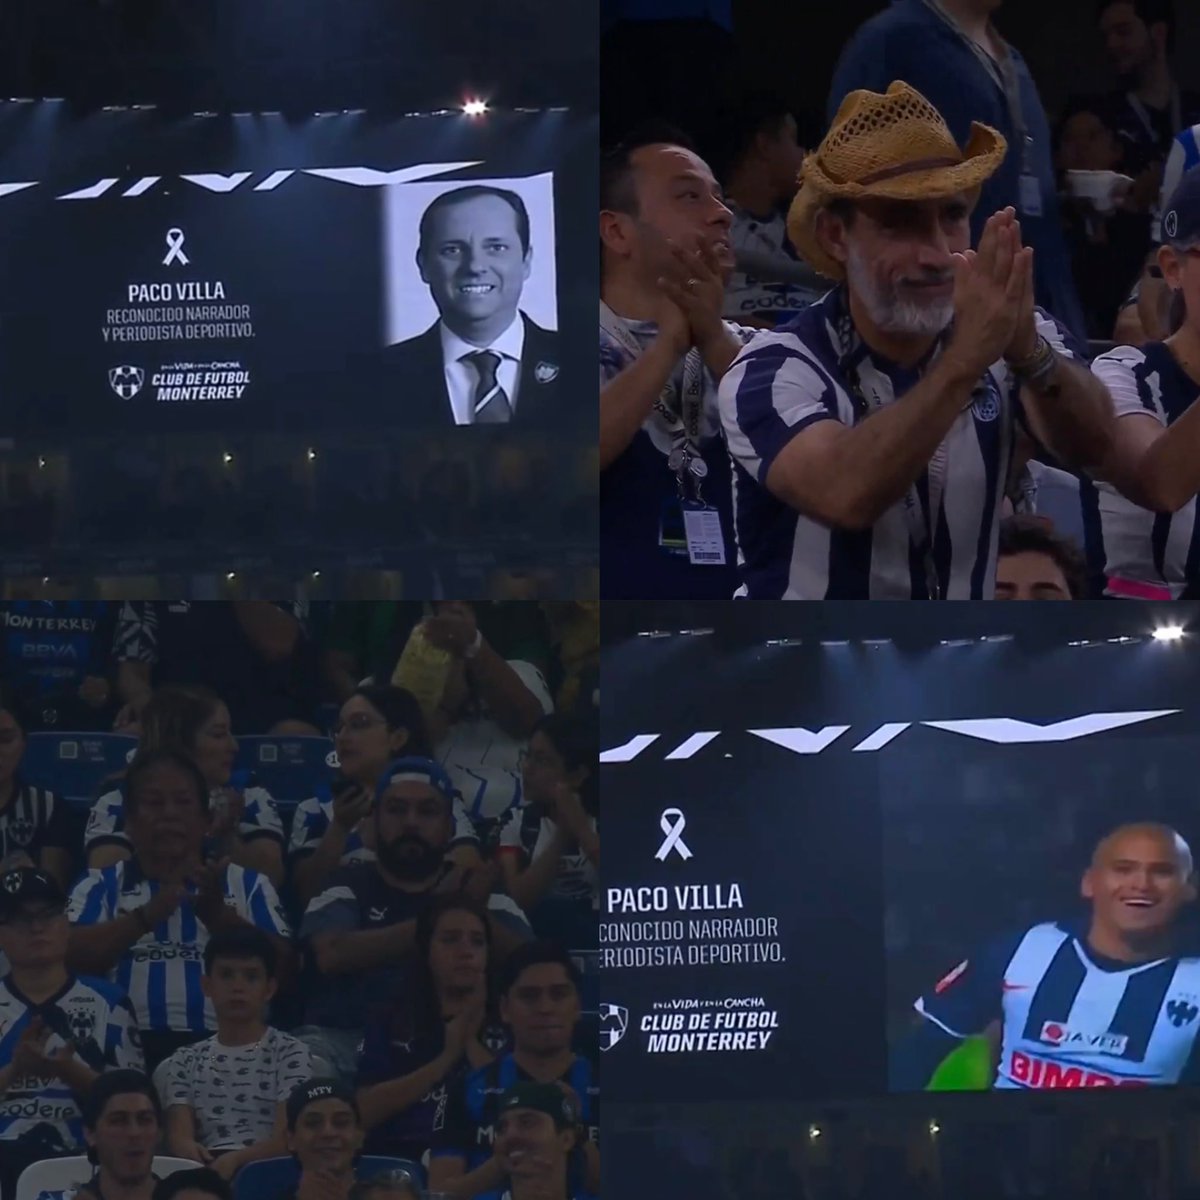 ¡¡GRAN HOMENAJE!! 👏🏟️

Antes del inicio del partido entre a Monterrey y Columbus Crew, el Gigante de Acero hizo 𝟭 𝗠𝗜𝗡𝗨𝗧𝗢 𝗗𝗘 𝗔𝗣𝗟𝗔𝗨𝗦𝗢𝗦 en honor a Paco Villa. Todo el estadio lo aplaudió y en las pantallas del BBVA pusieron su 𝗛𝗜𝗦𝗧𝗢́𝗥𝗜𝗖𝗔